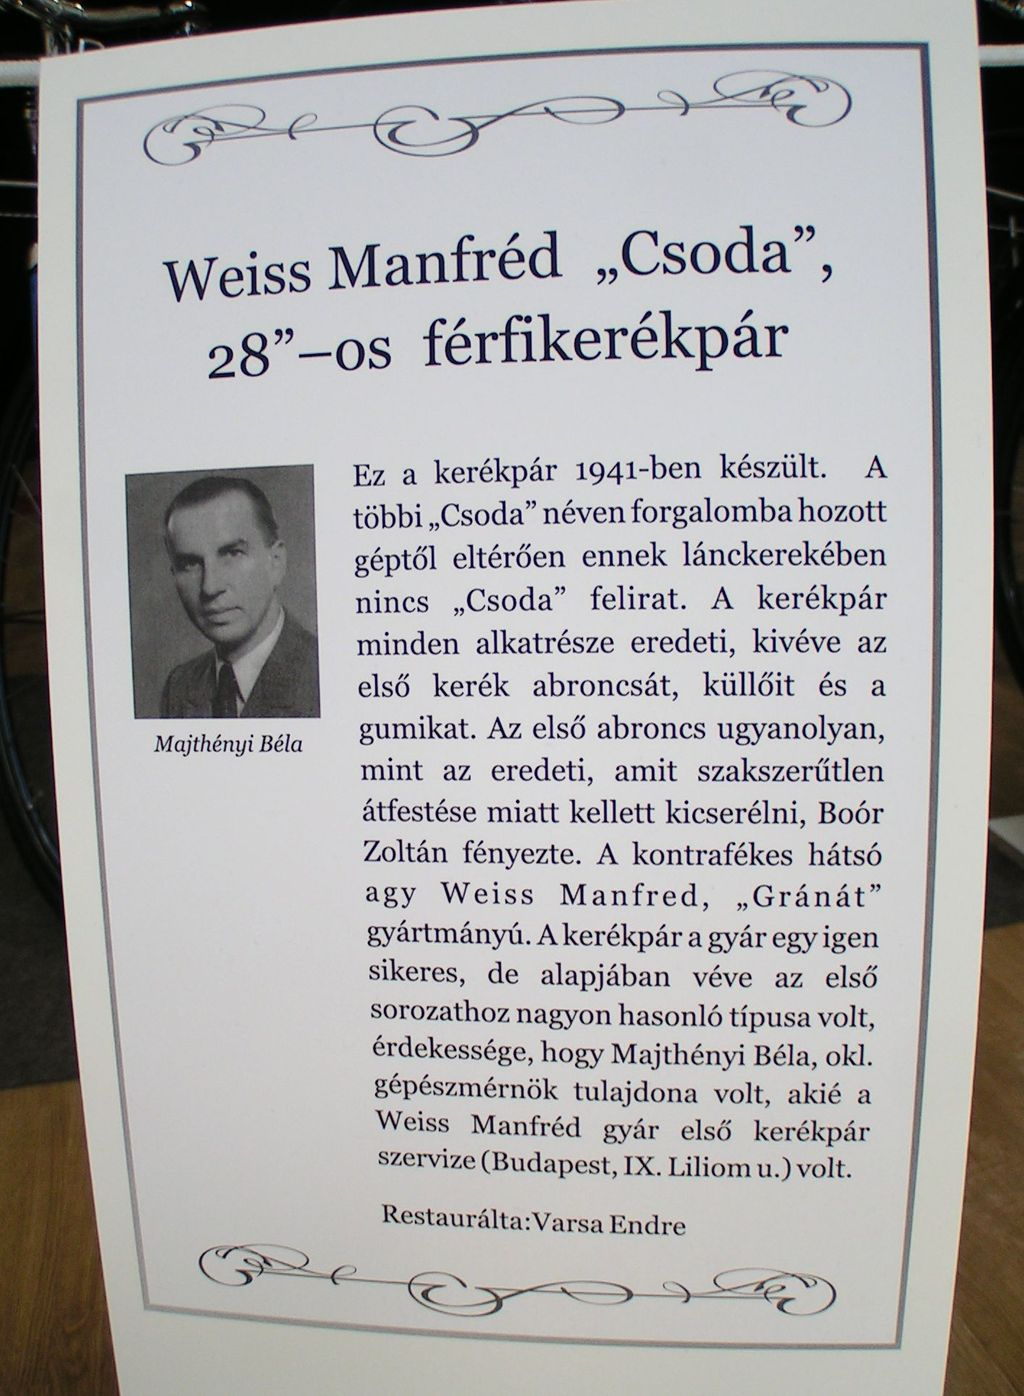 033 Weiss Manfréd - Csoda